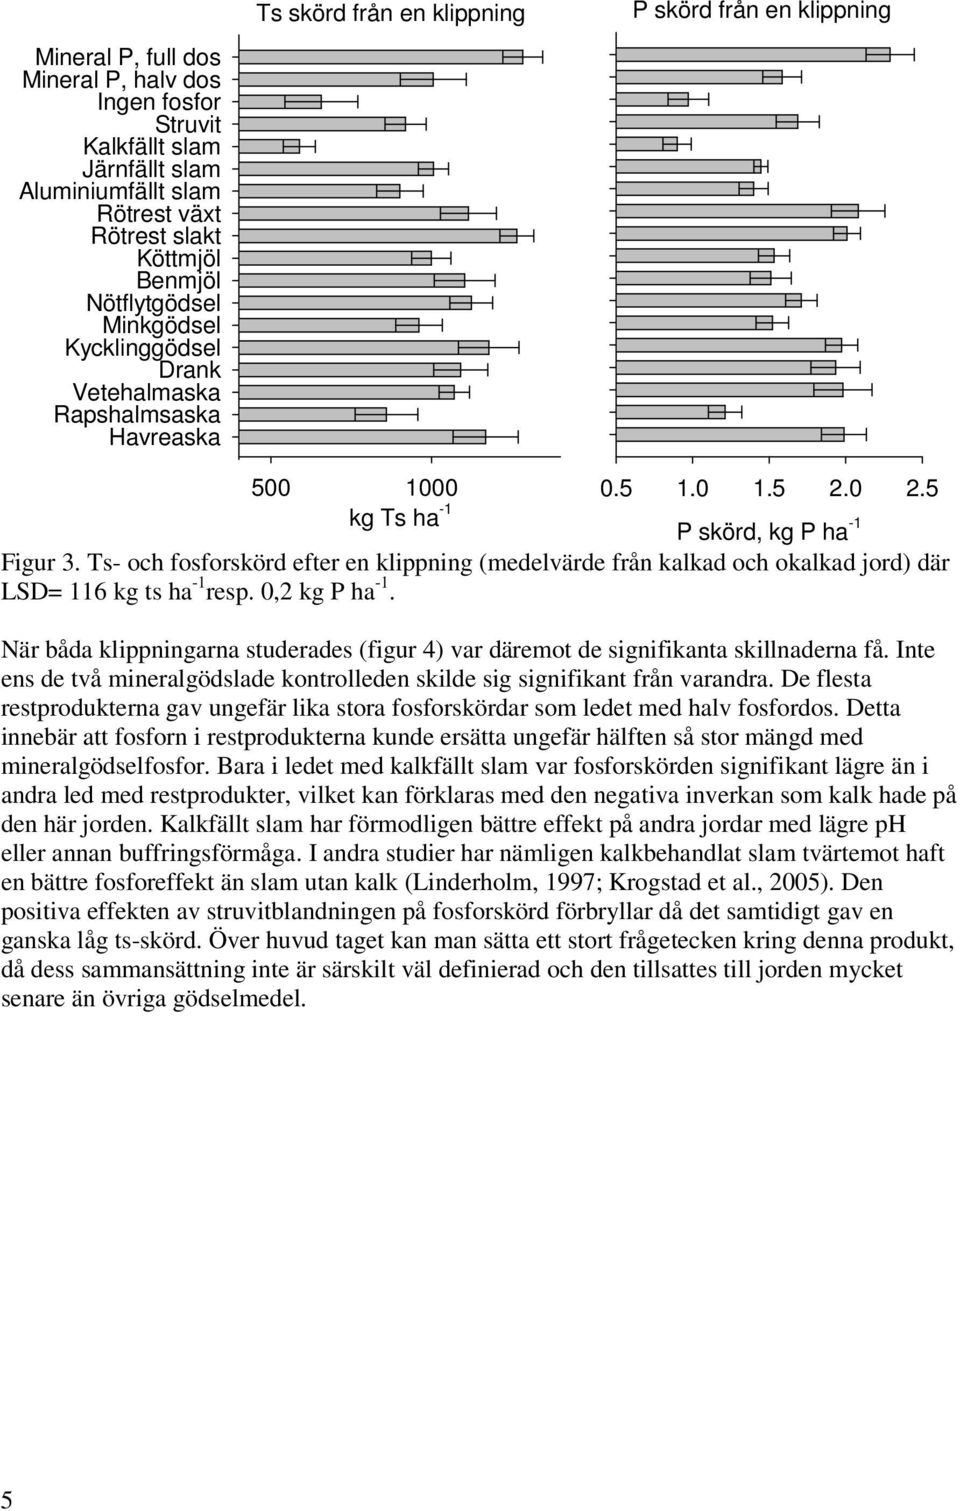 Ts- och fosforskörd efter en klippning (medelvärde från kalkad och okalkad jord) där LSD= 116 kg ts ha -1 resp. 0,2 kg P ha -1.